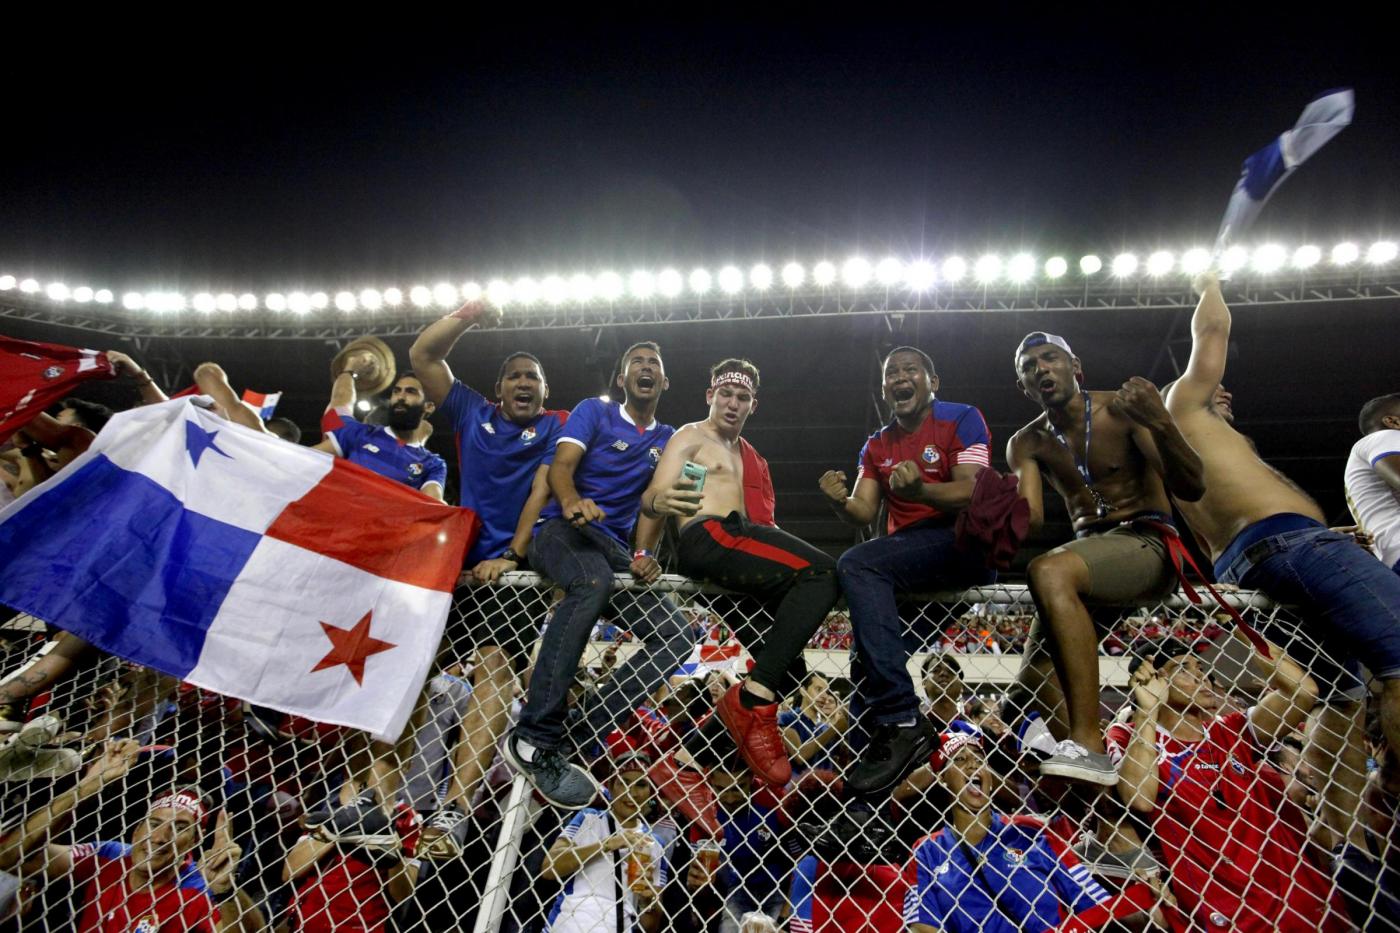 Inghilterra-Costa Rica 7 giugno: amichevole internazionale che è un piccolo antipasto del torneo mondiale. Inglesi favoriti.